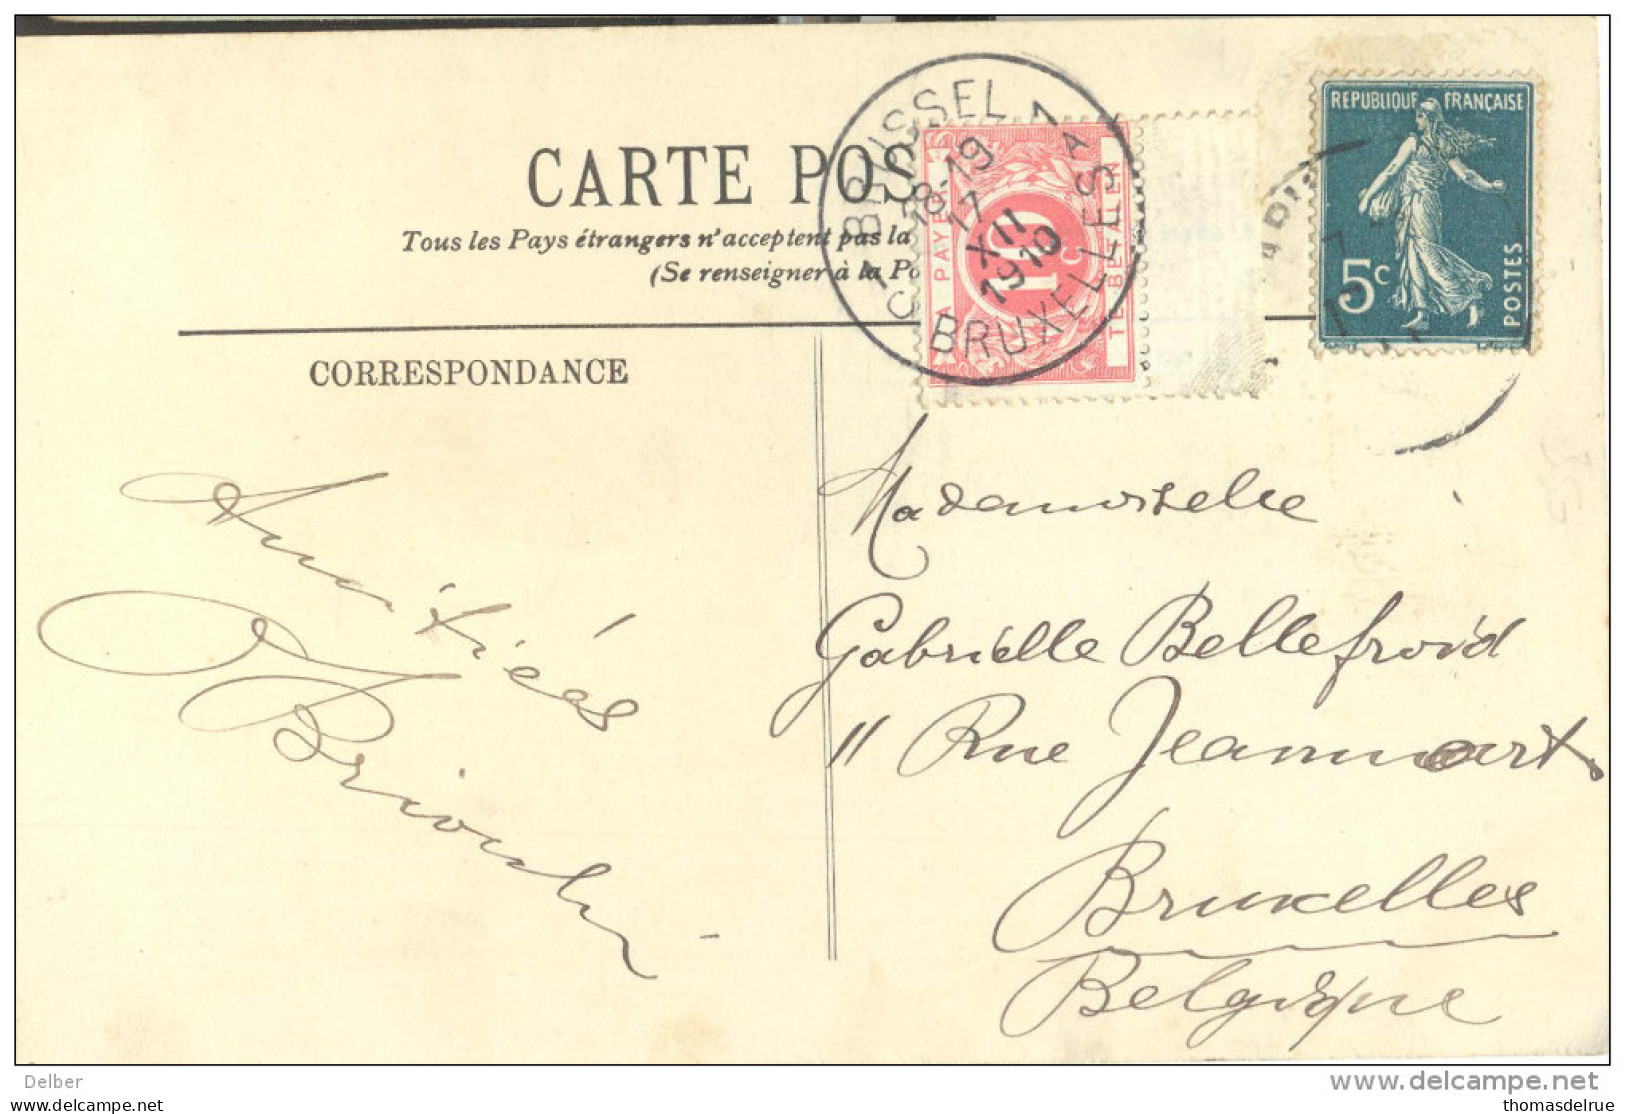 _5Tx936 TX5: S1C BRUSSEL 1A BRUXELLES 1910 : Onvoldoende Gefrankeerde Postkaart: 5ct Semeuse > Bruxelles - Covers & Documents